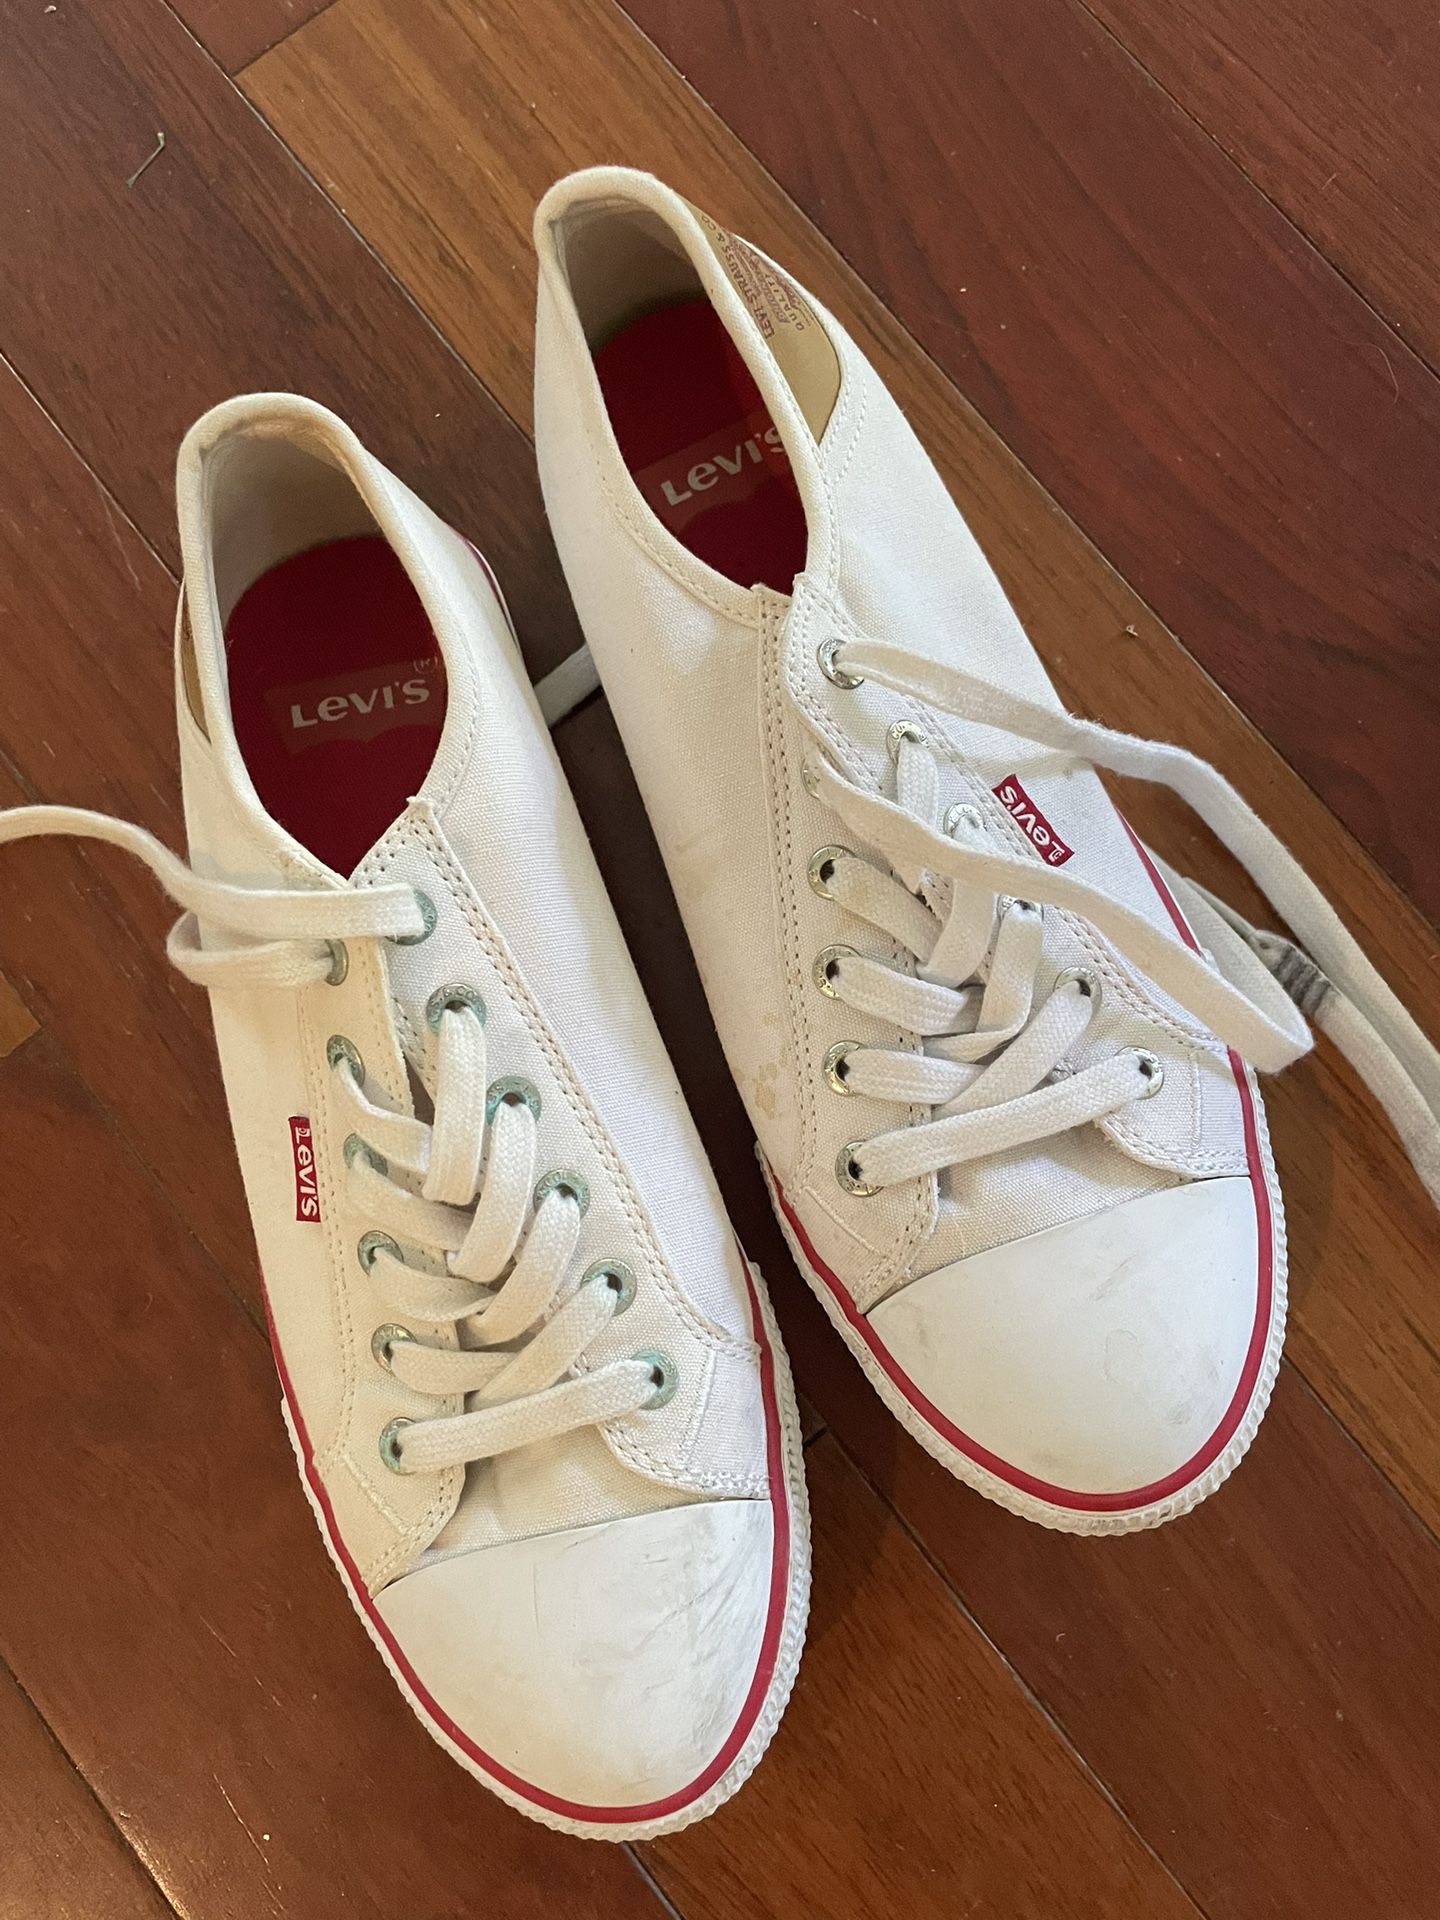 Levi’s Tennis Shoes - 8.5